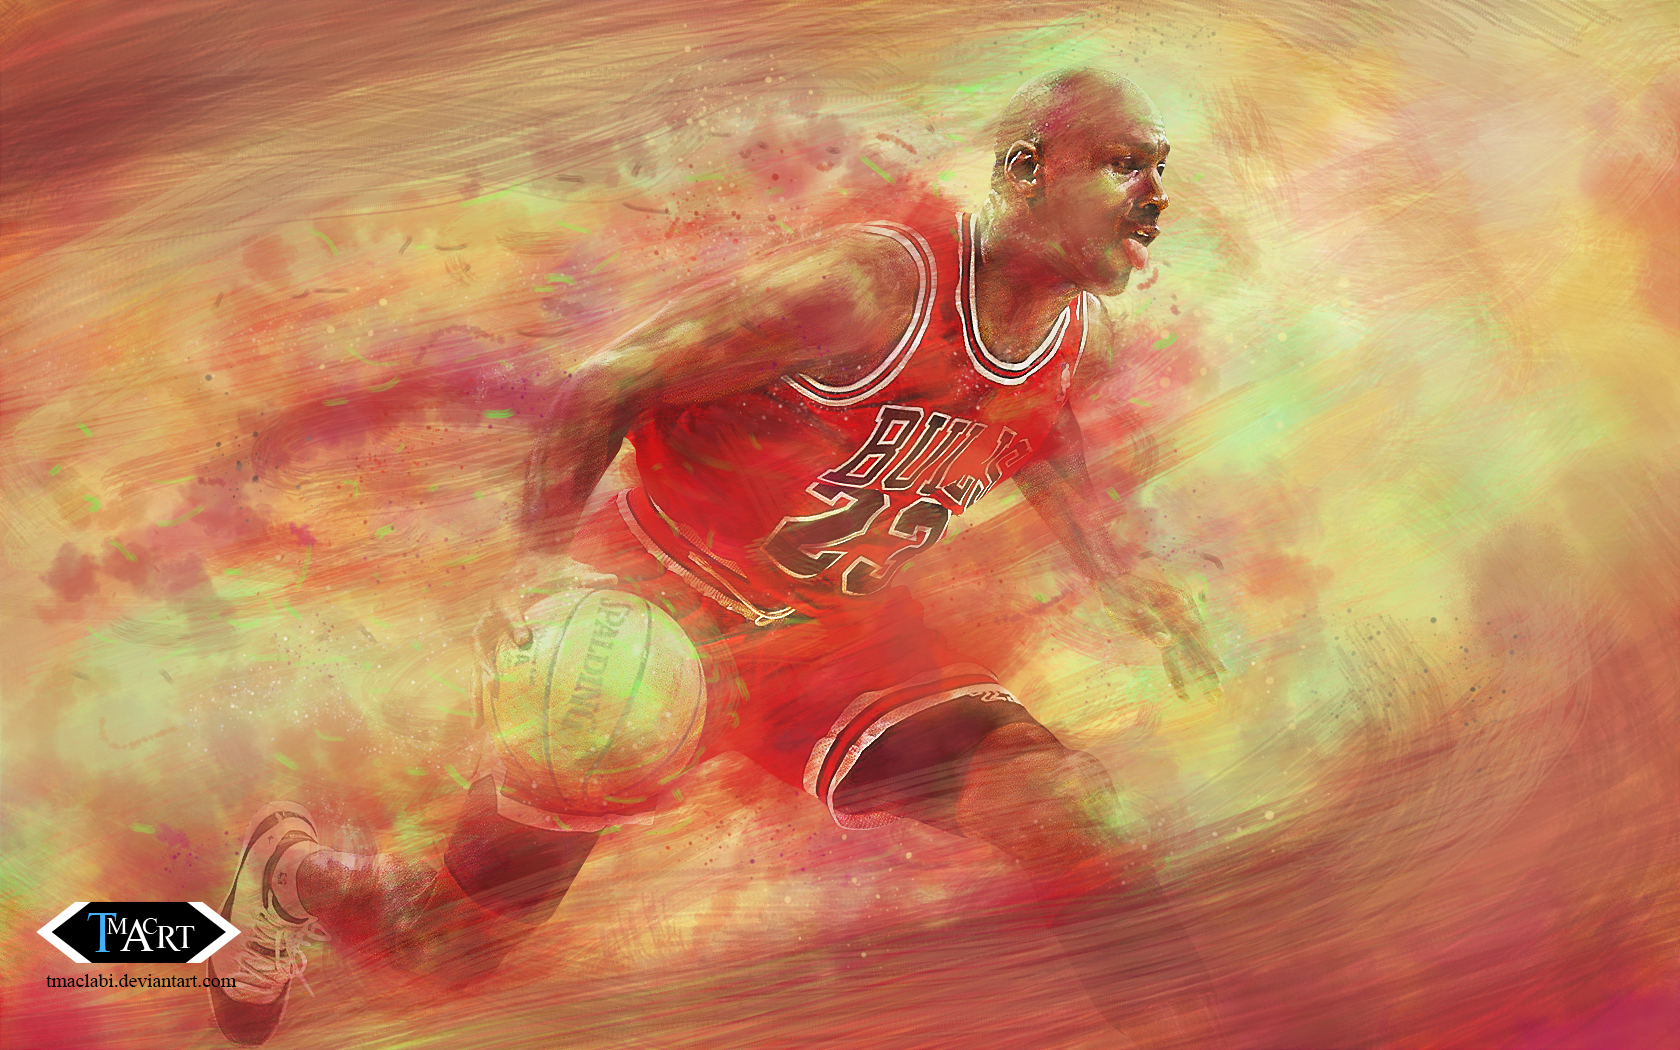 Michael Jordan Laser Red 23 Wallpaper by tmaclabi on